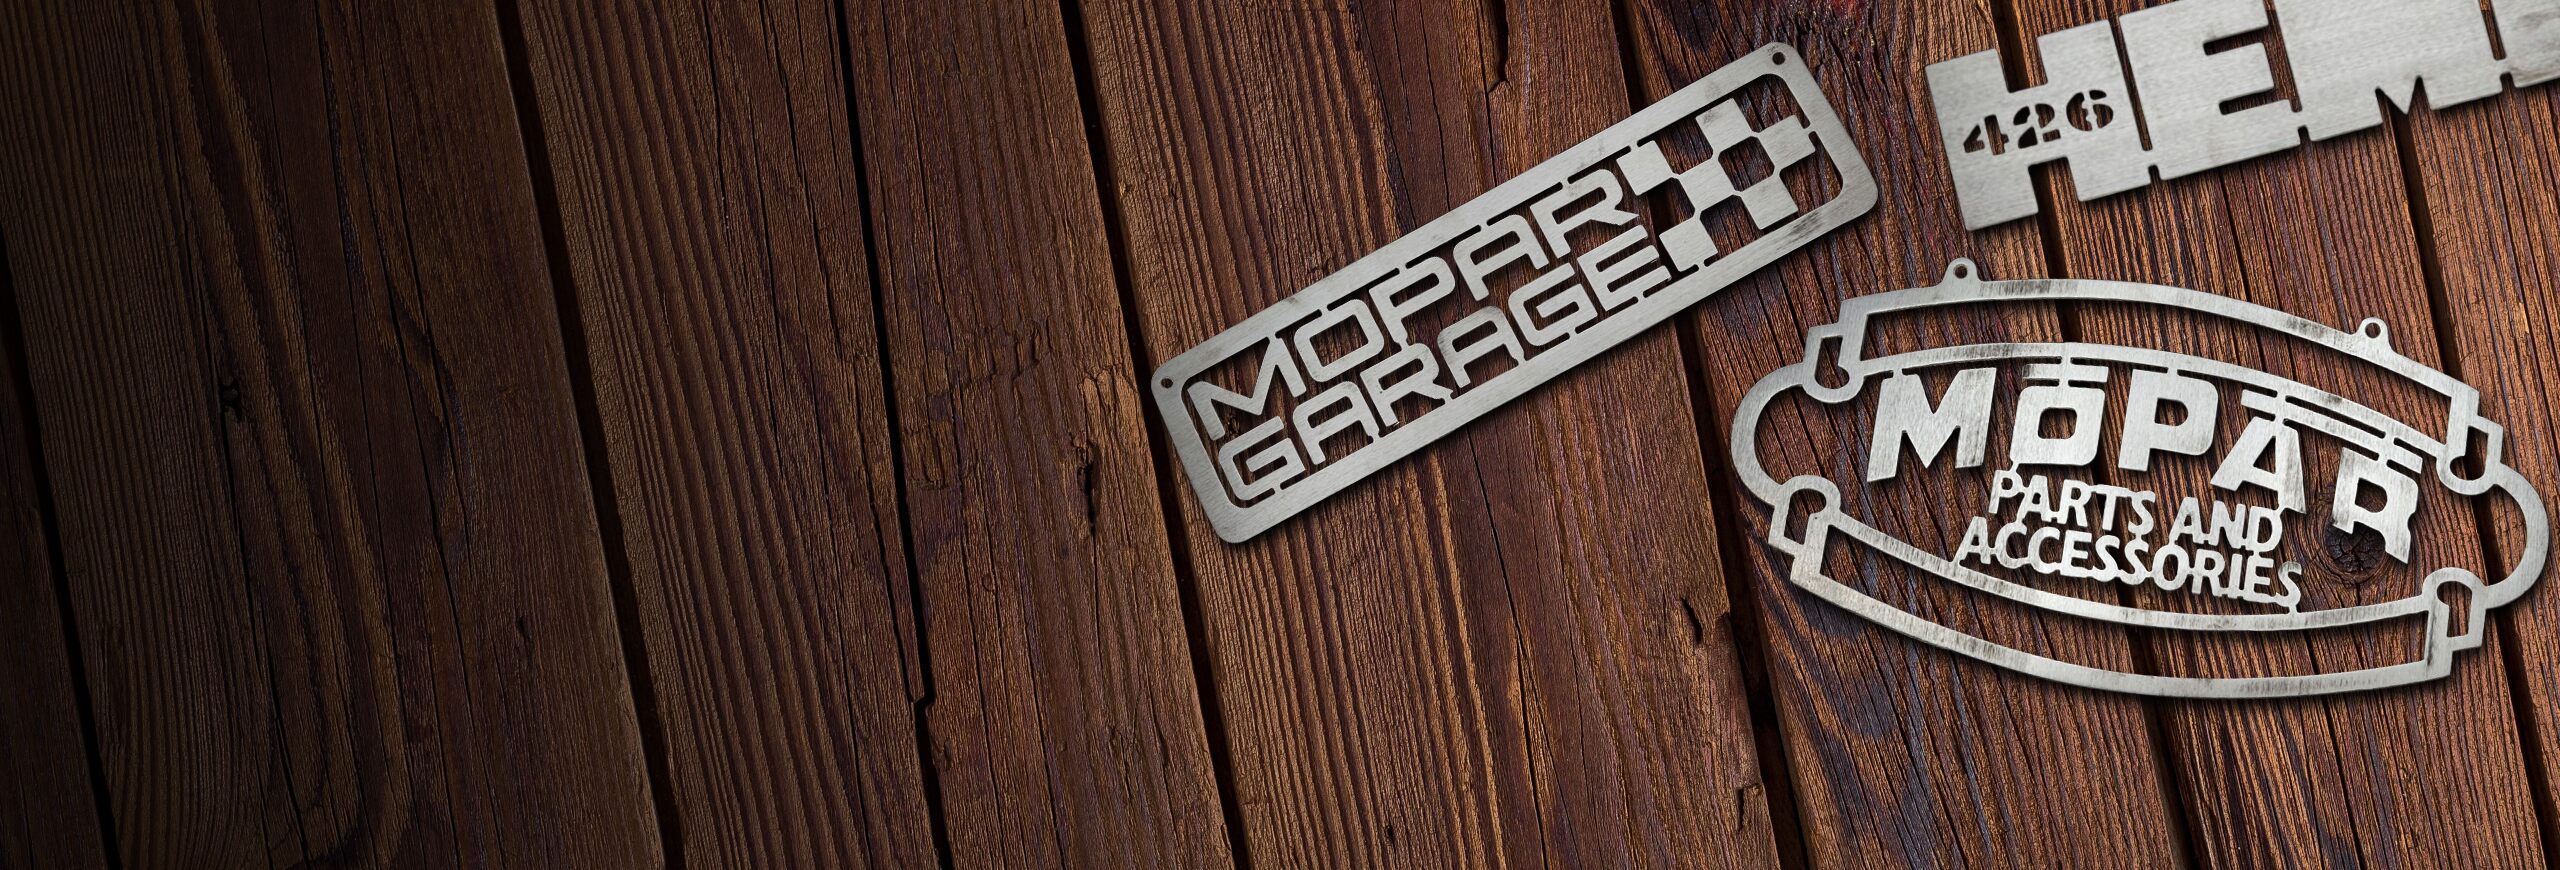 Un juego de tres emblemas dispuestos en una superficie de madera: un emblema de Mopar Garage, un emblema de Mopar Parts and Accessories y un emblema de Hemi 426.